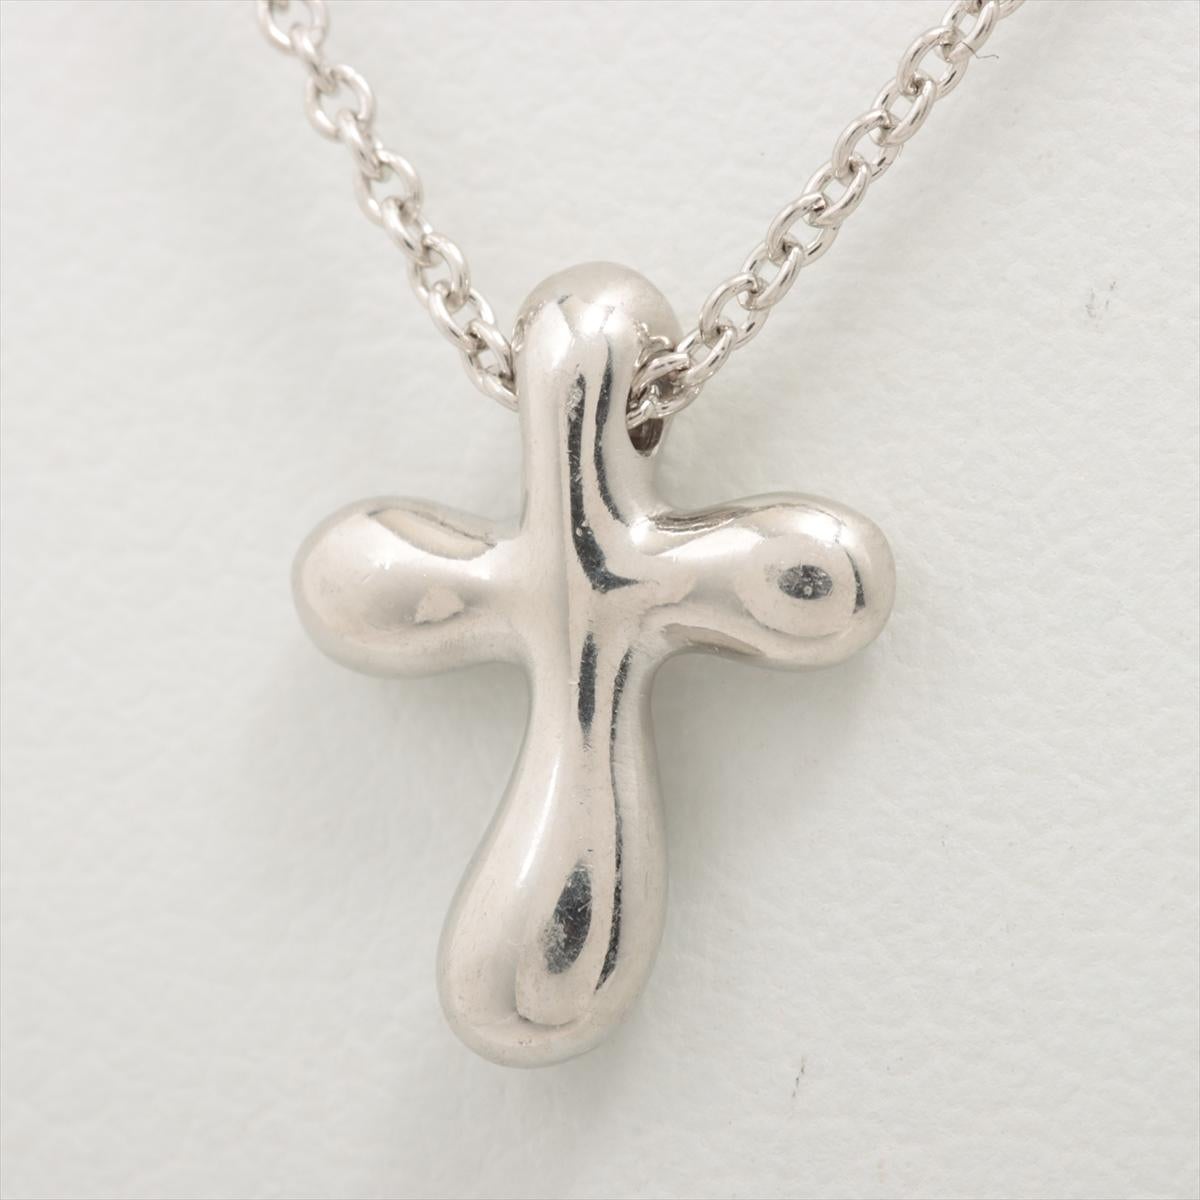 Die Tiffany & Co. Small Cross Pendant Necklace in Platin ist ein zeitloses und elegantes Schmuckstück, das Anmut und Raffinesse verkörpert. Die aus hochwertigem Platin gefertigte Halskette mit einem kleinen Kreuzanhänger hängt an einer zarten Kette.